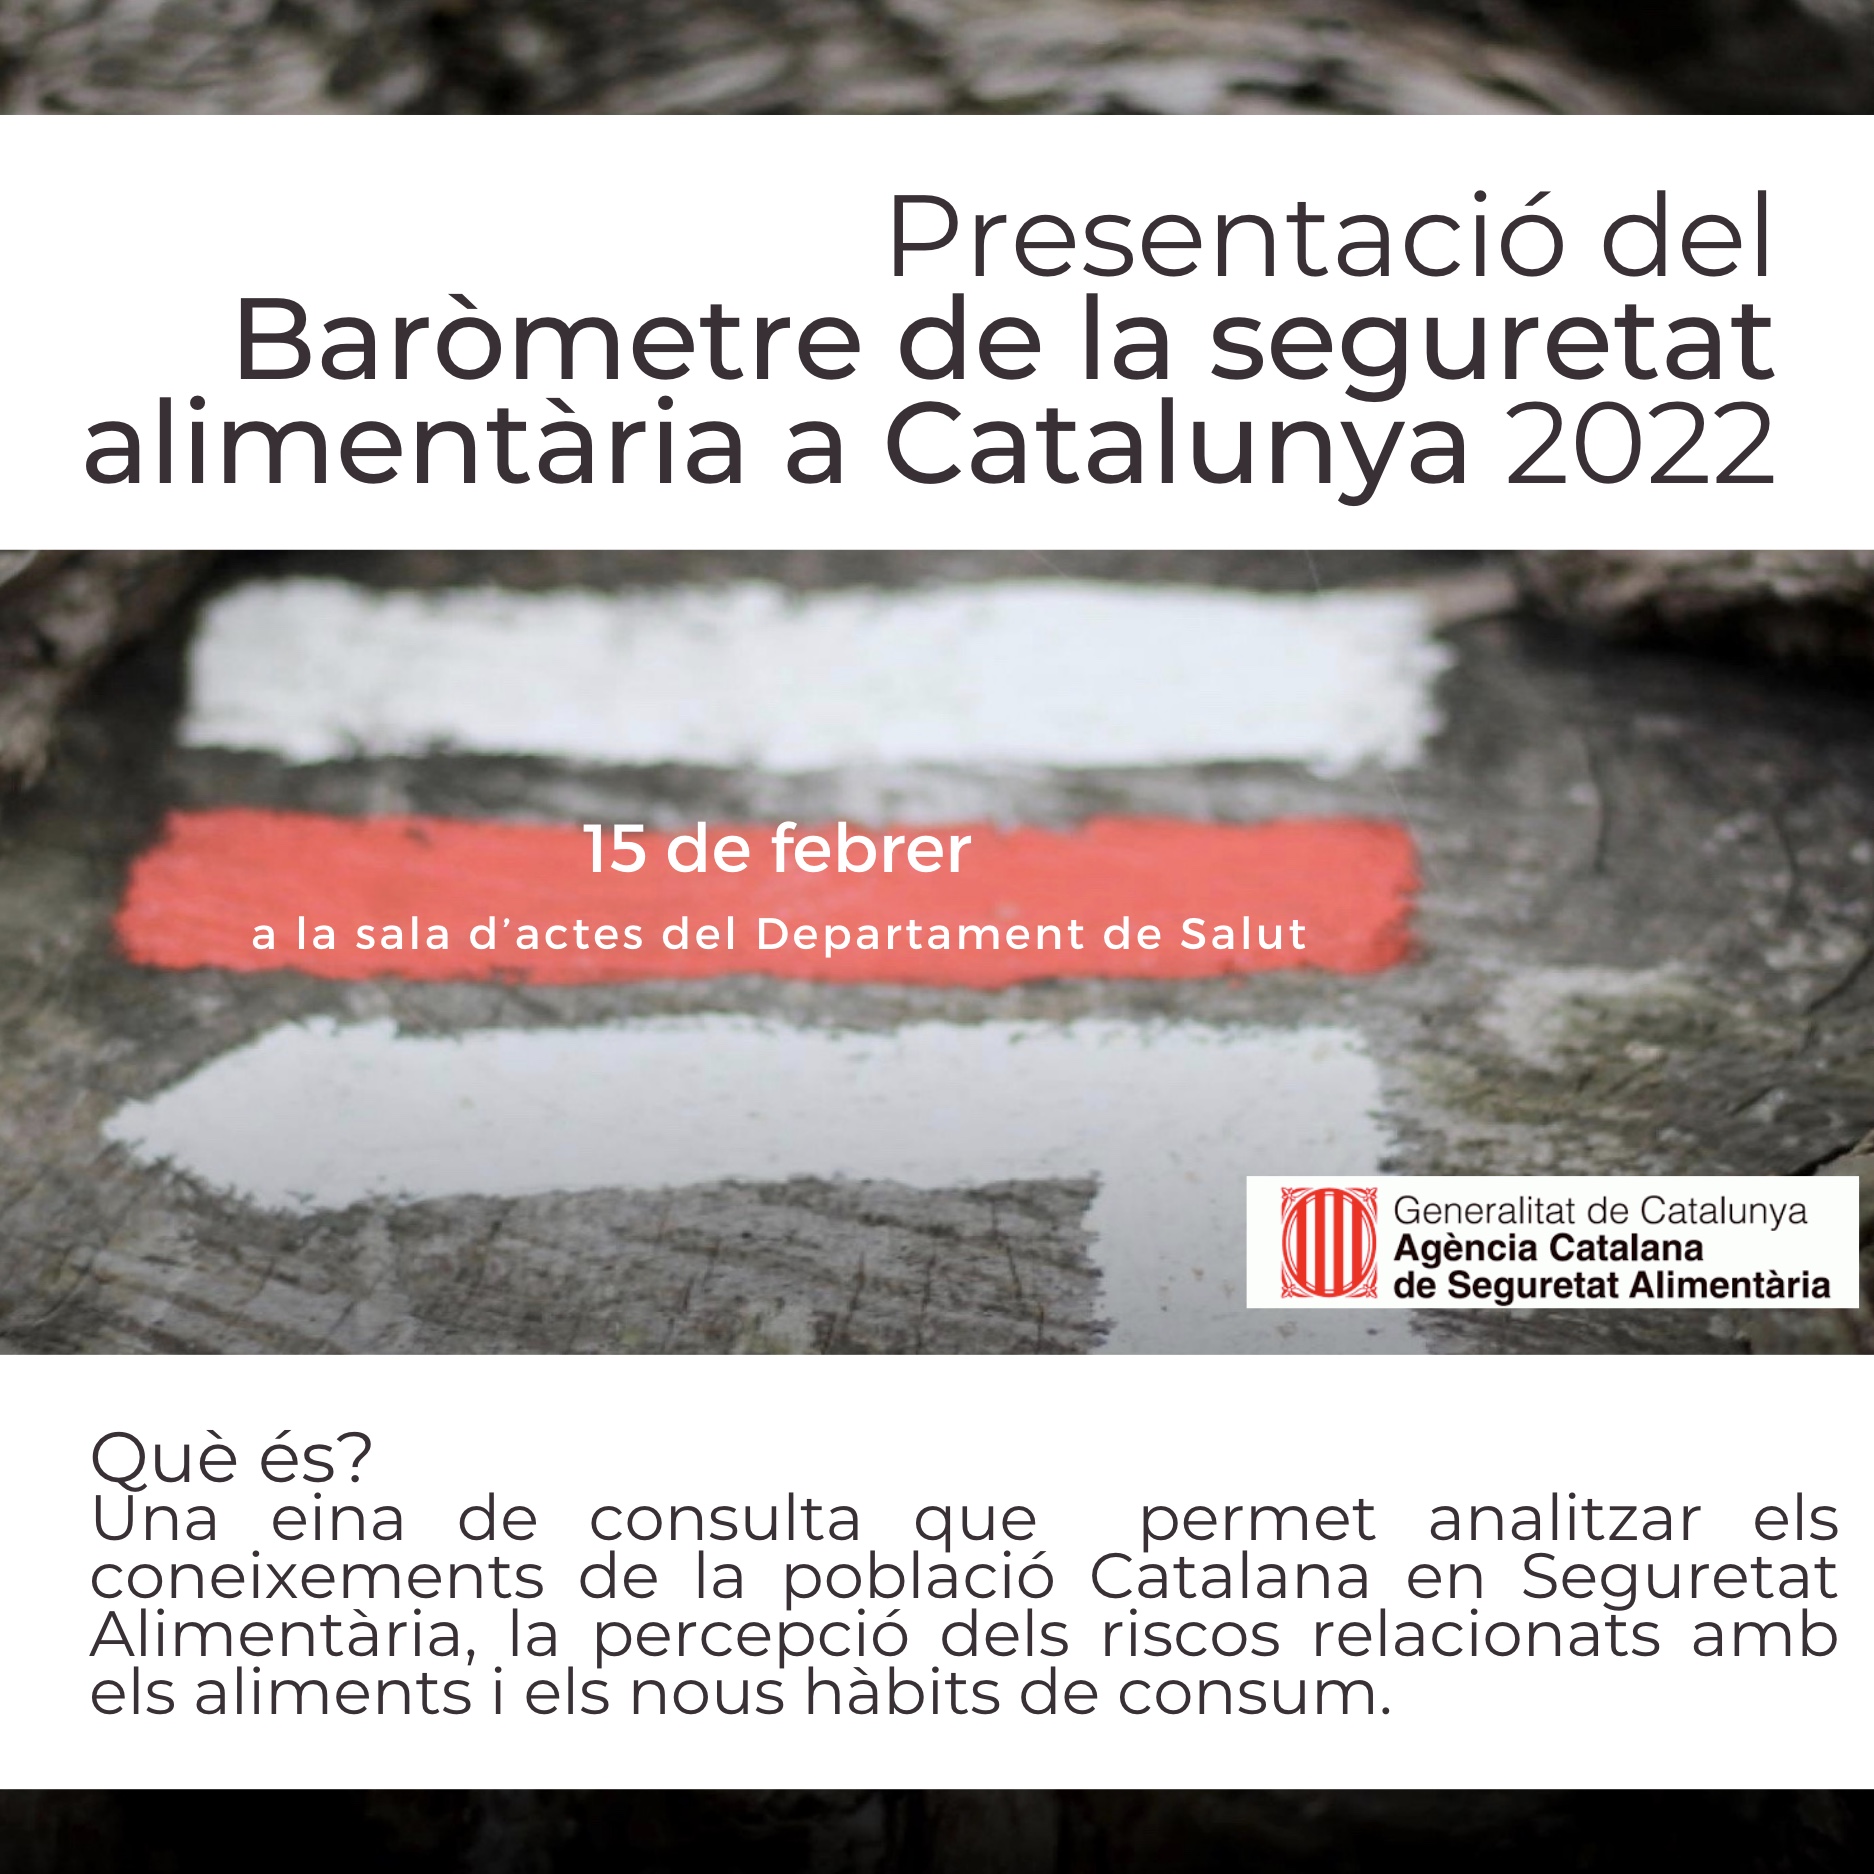 Unes notes sobre la presentació del  Baròmetre de la seguretat alimentaria a Catalunya 2022